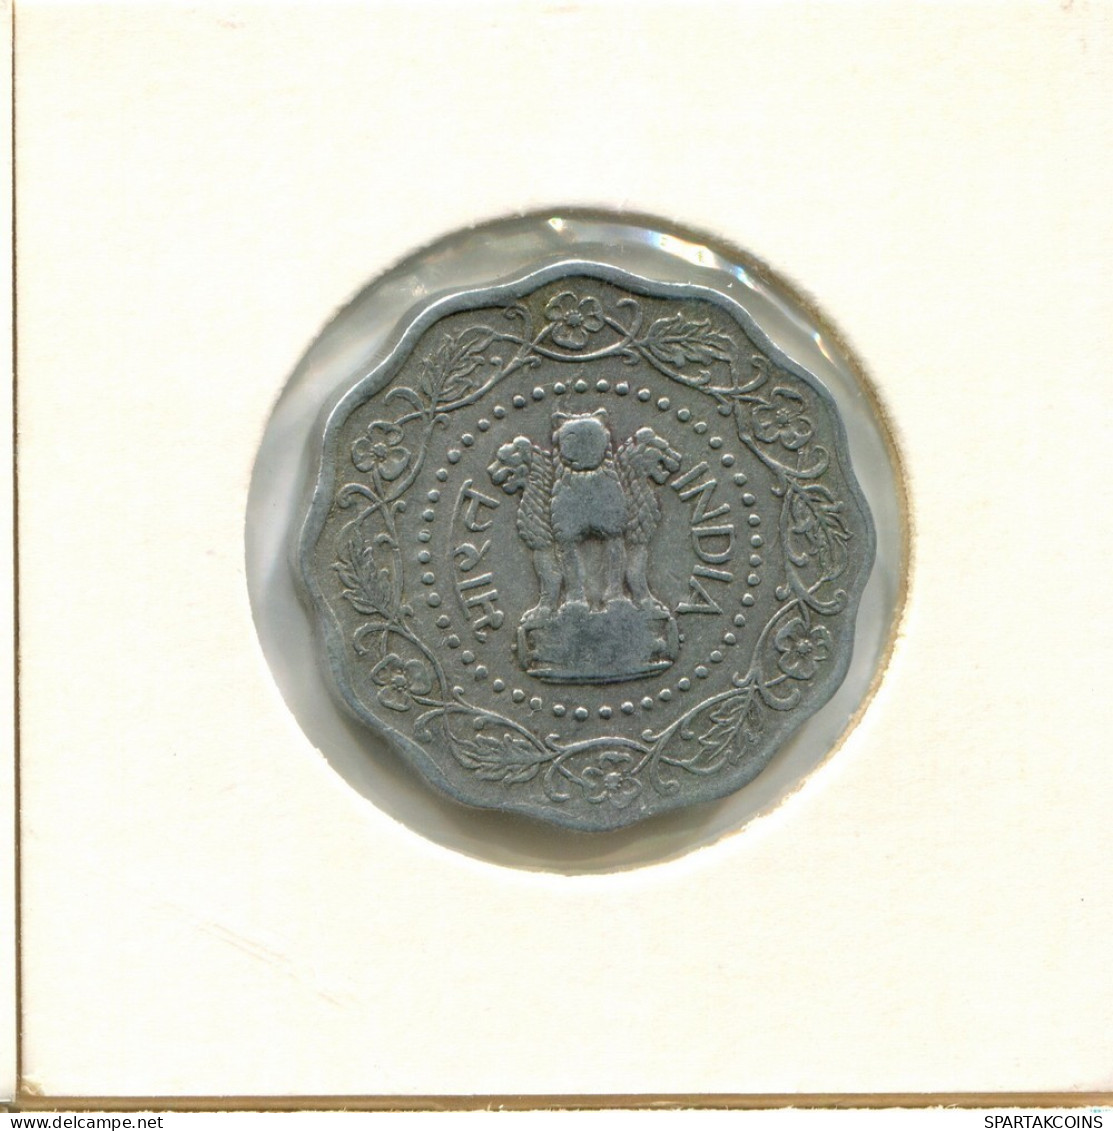 10 PAISE 1972 INDIA Moneda #AY747.E.A - Indien